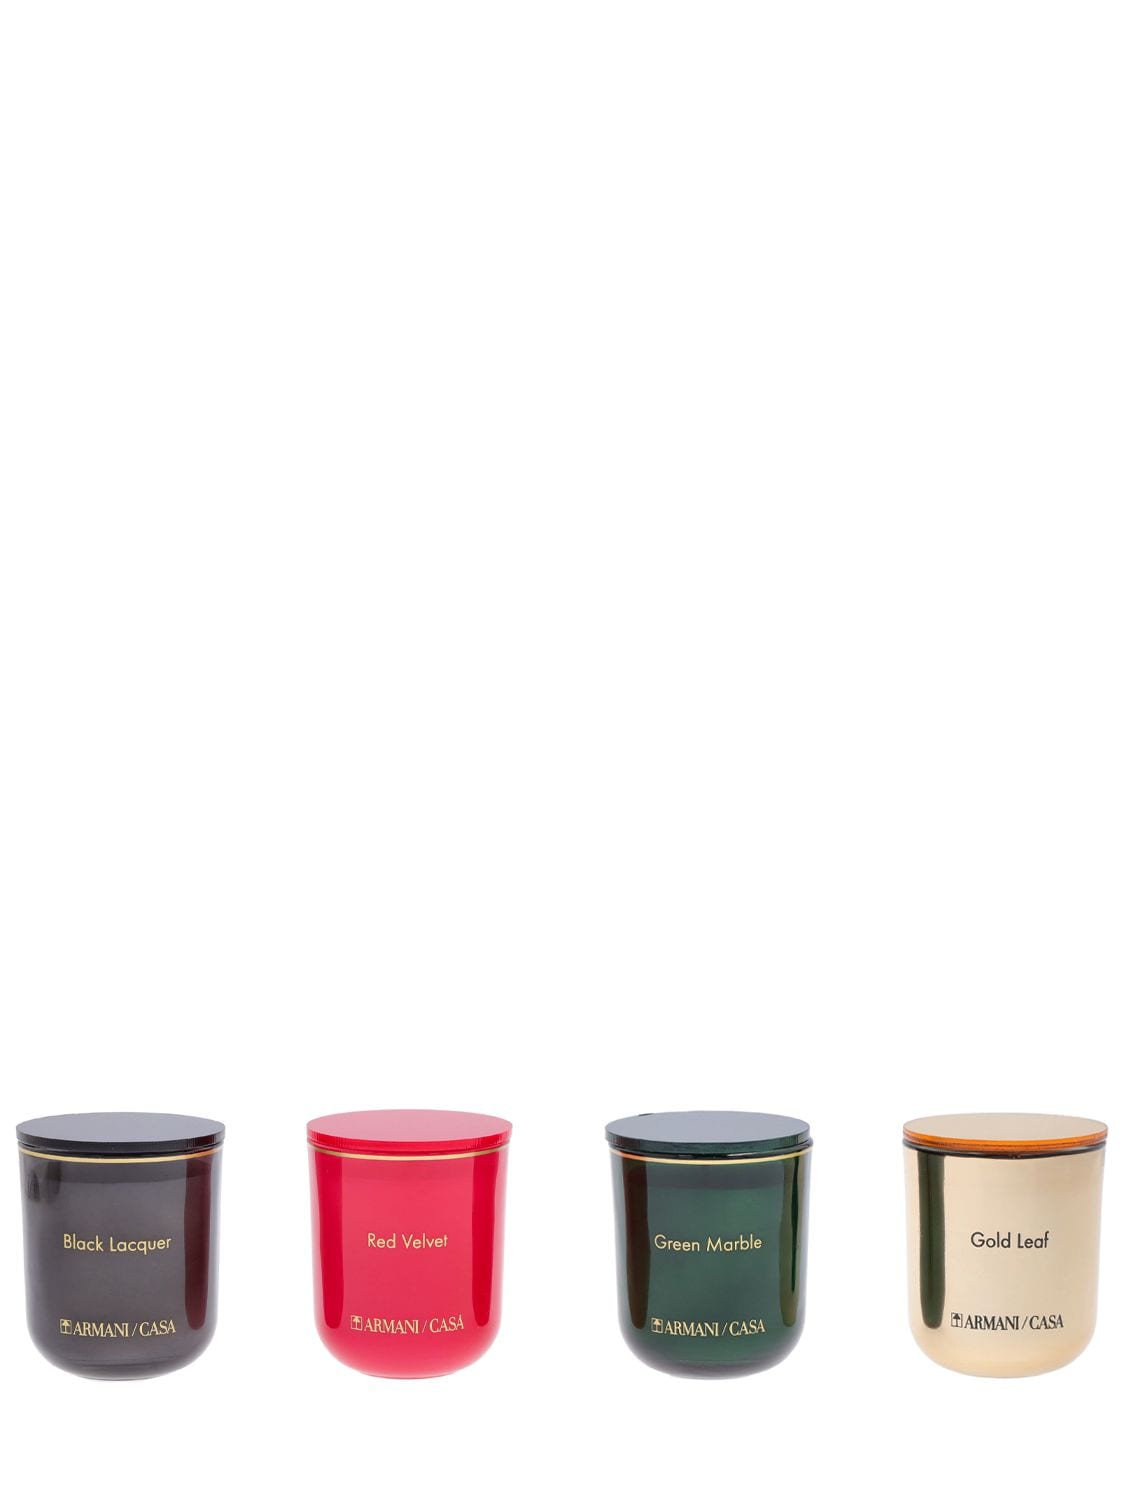 Armani/casa Pegaso Set Of 4 Mini Scented Candles In Multicolor